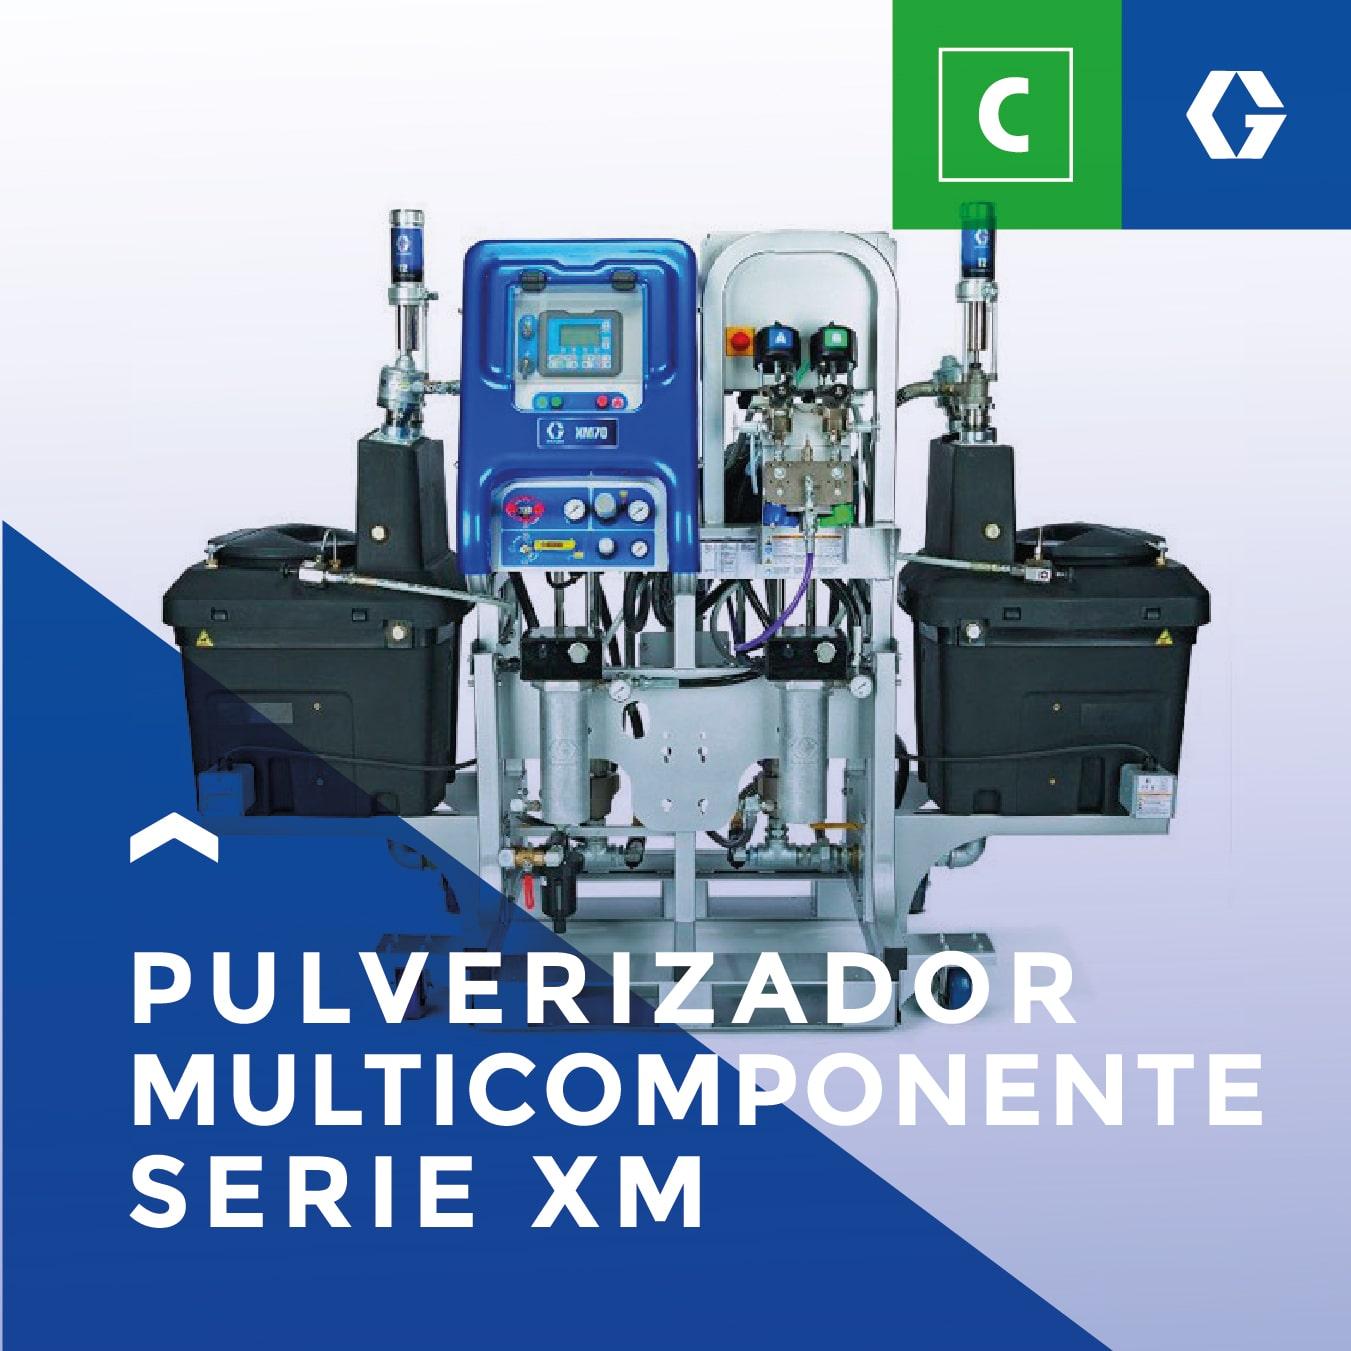 Pulverizador multicomponente serie XM